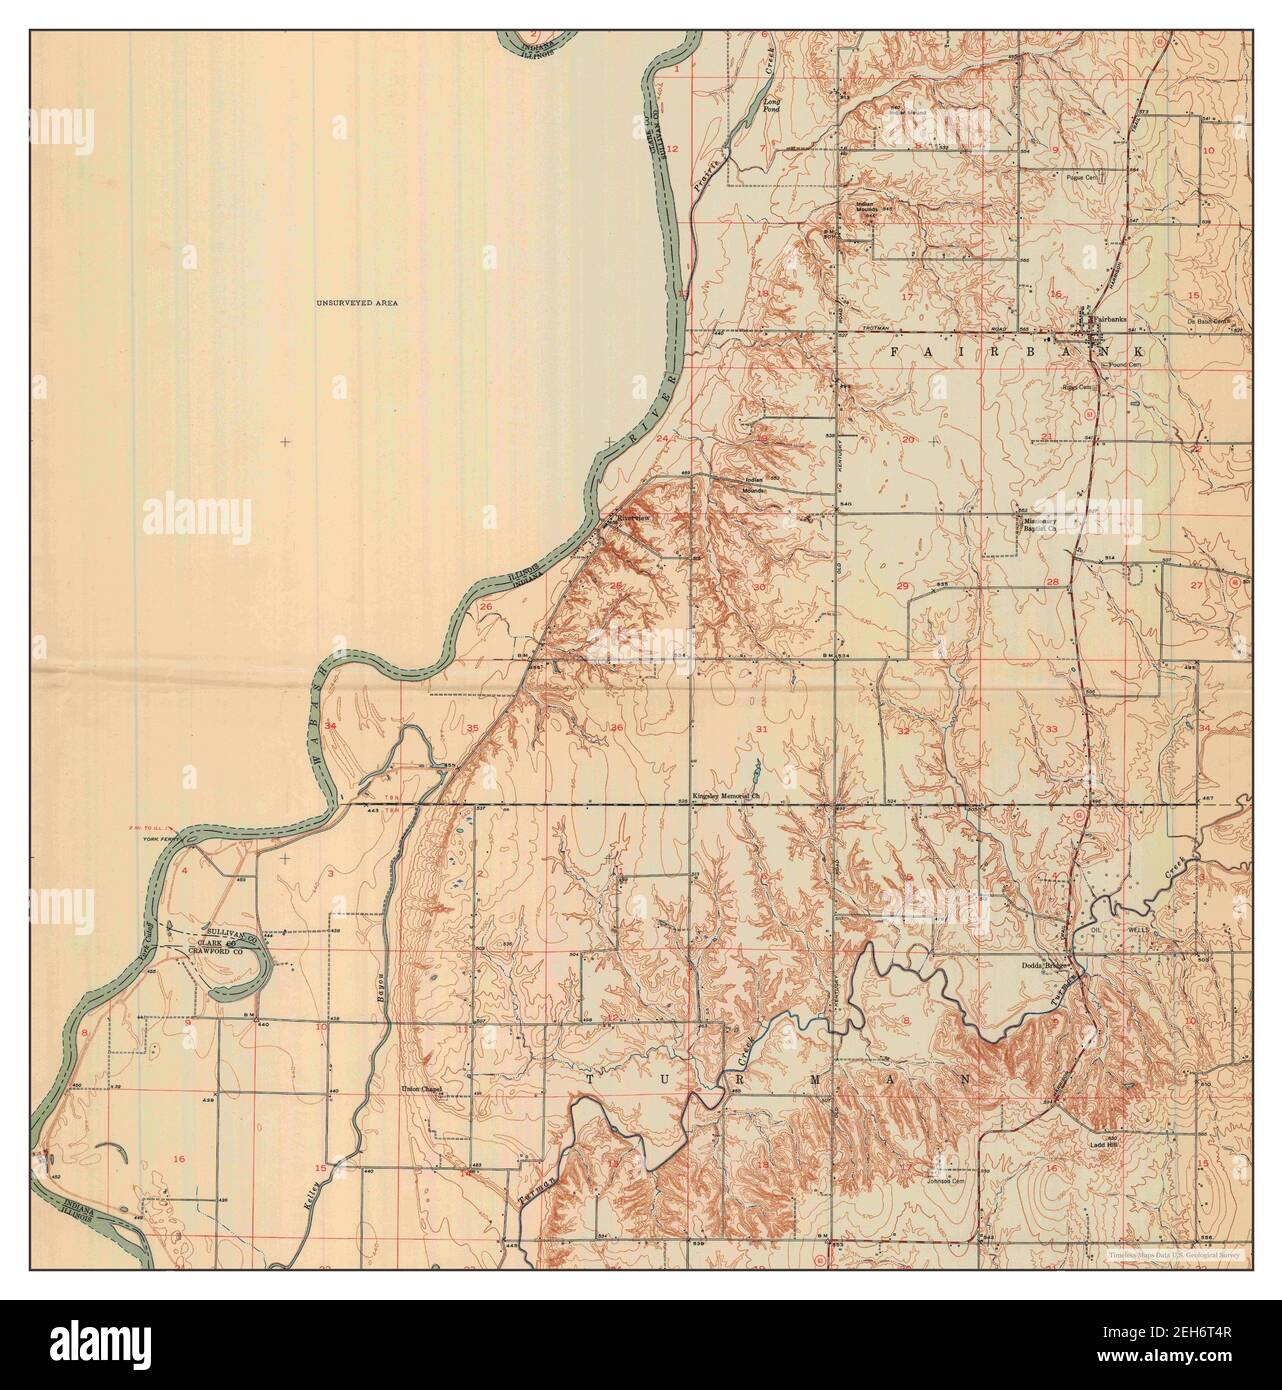 Fairbanks, Indiana, Karte 1952, 1:24000, Vereinigte Staaten von Amerika von Timeless Maps, Daten U.S. Geological Survey Stockfoto